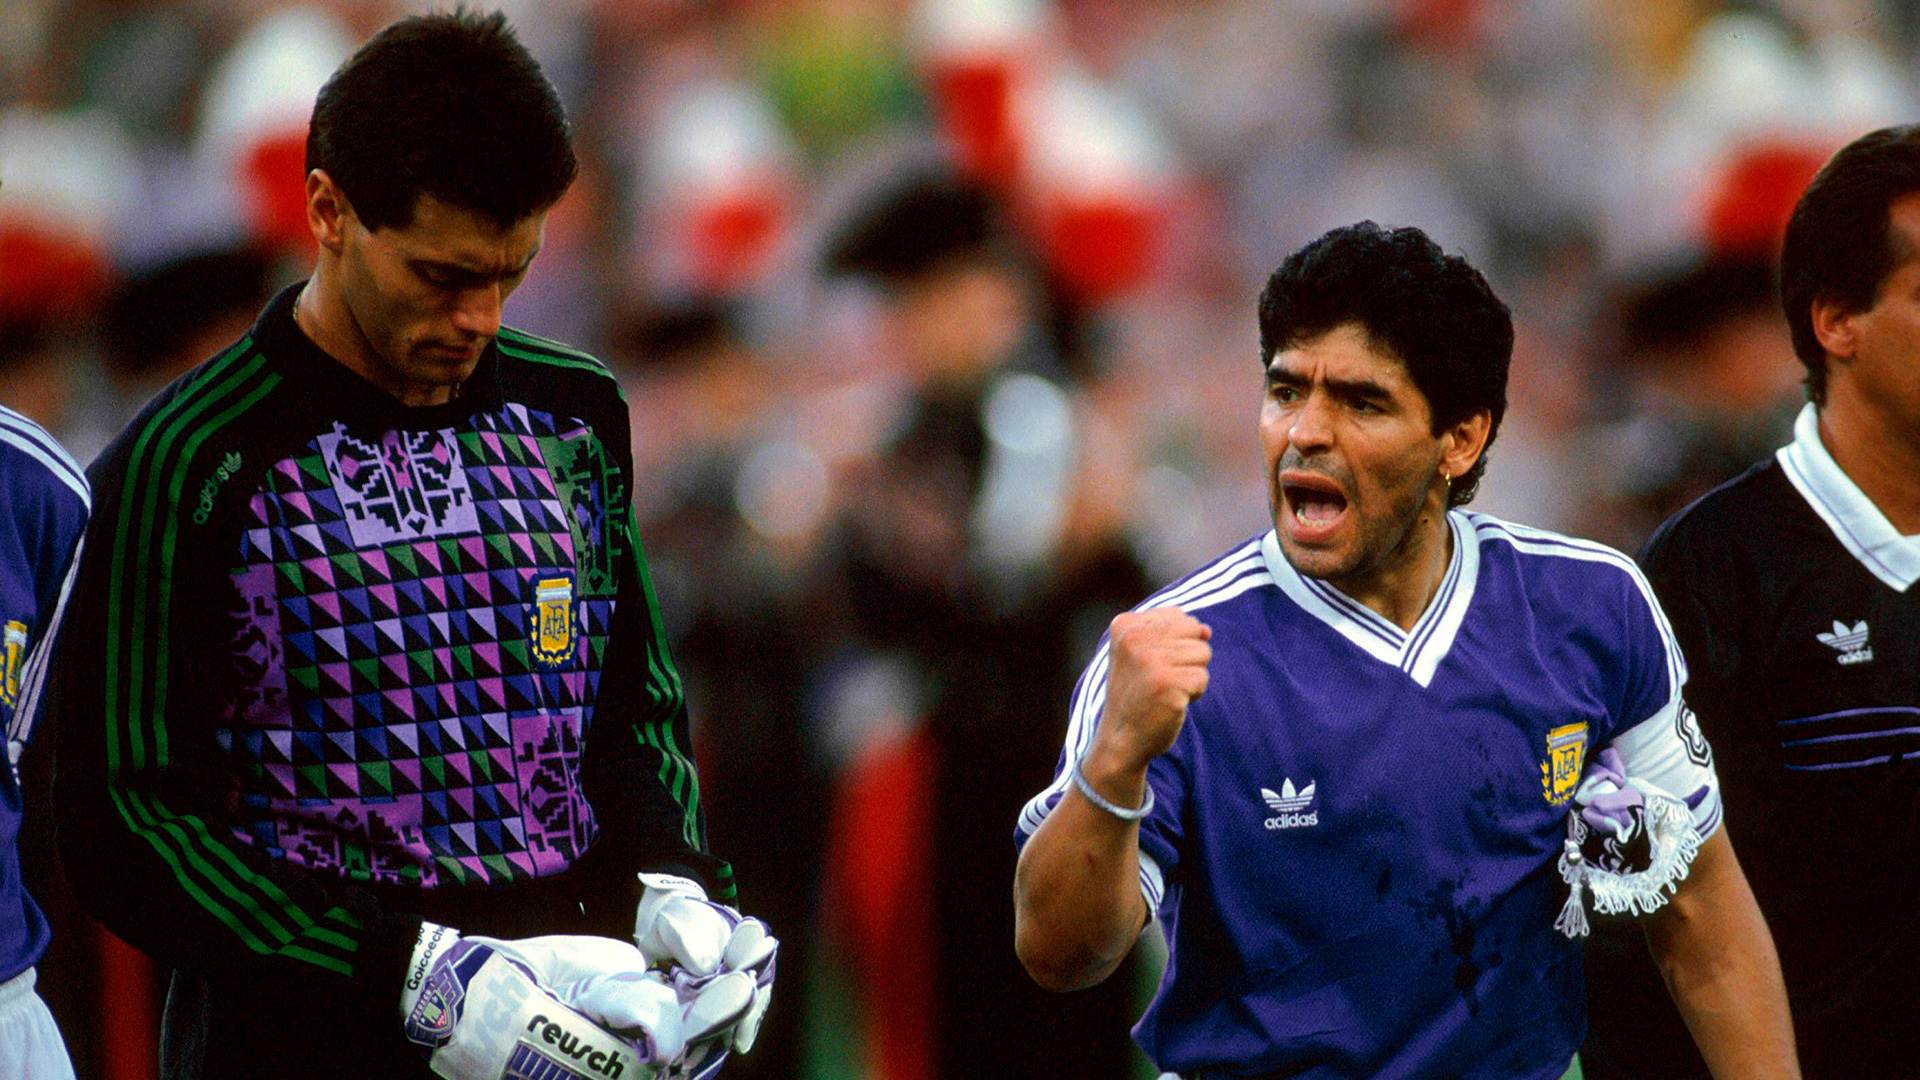 Indumentaria de la selección argentina en 1990. Foto: Imago/Shutterstock 